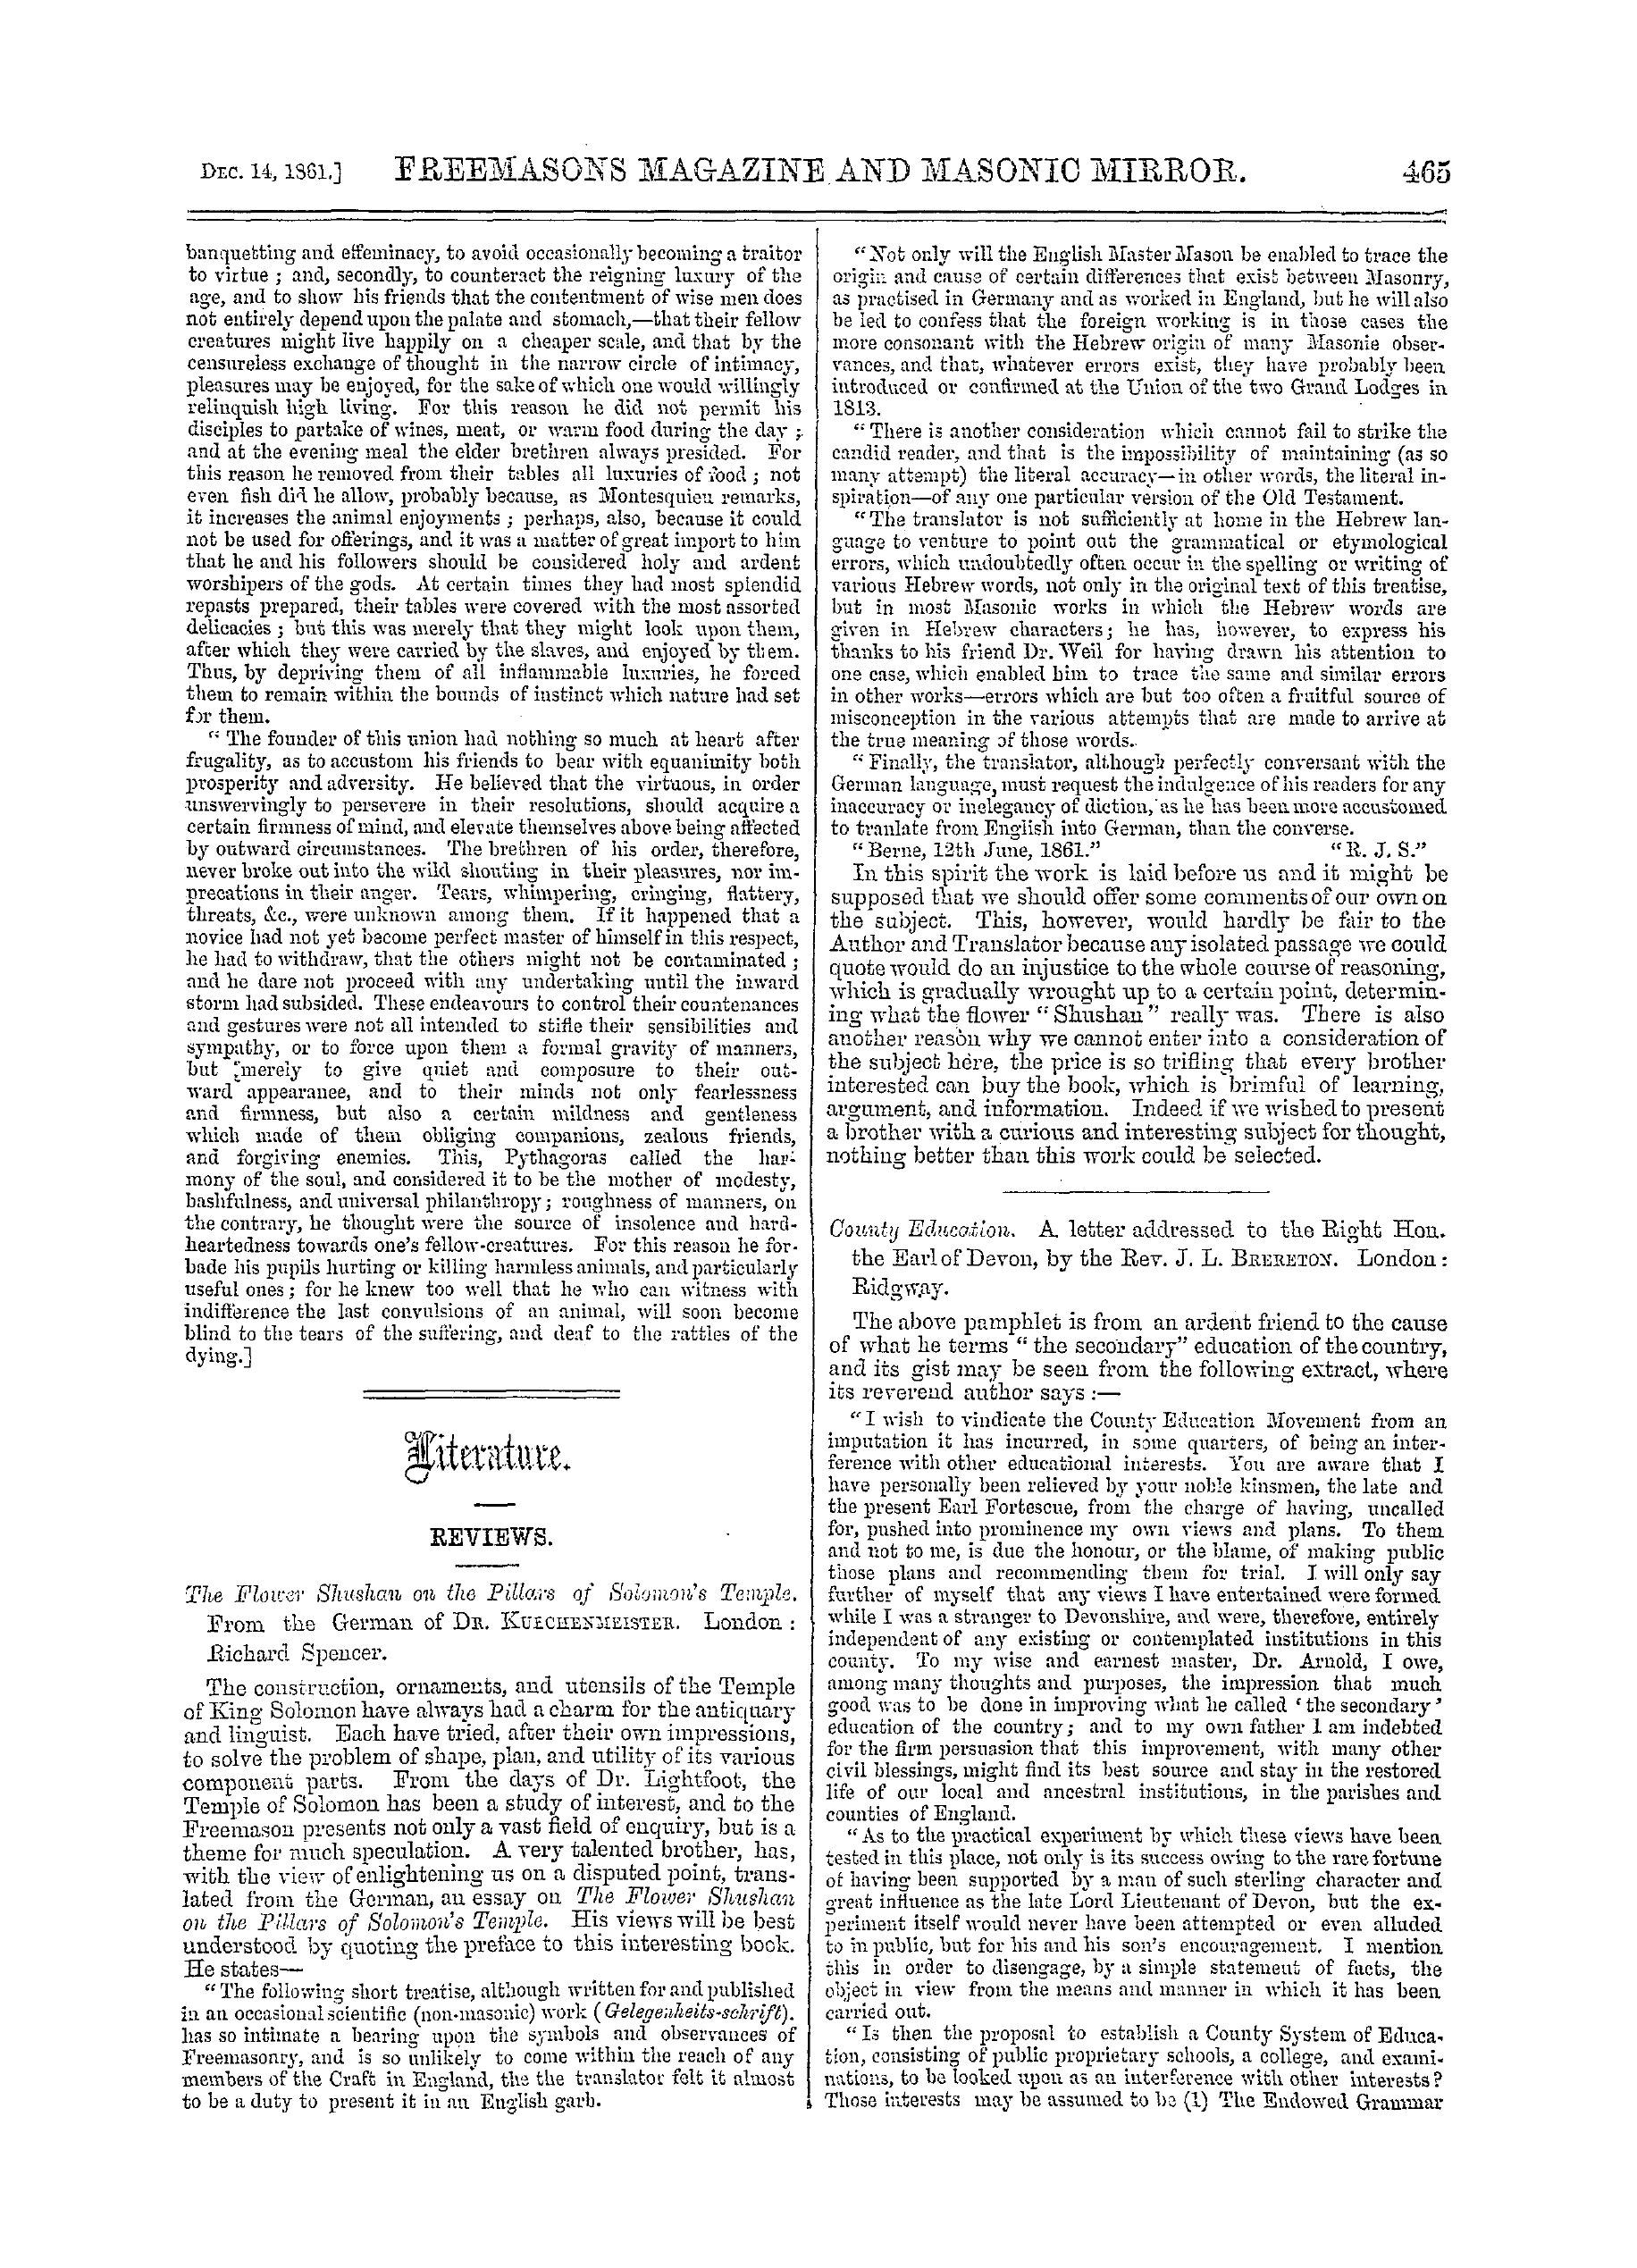 The Freemasons' Monthly Magazine: 1861-12-14: 5